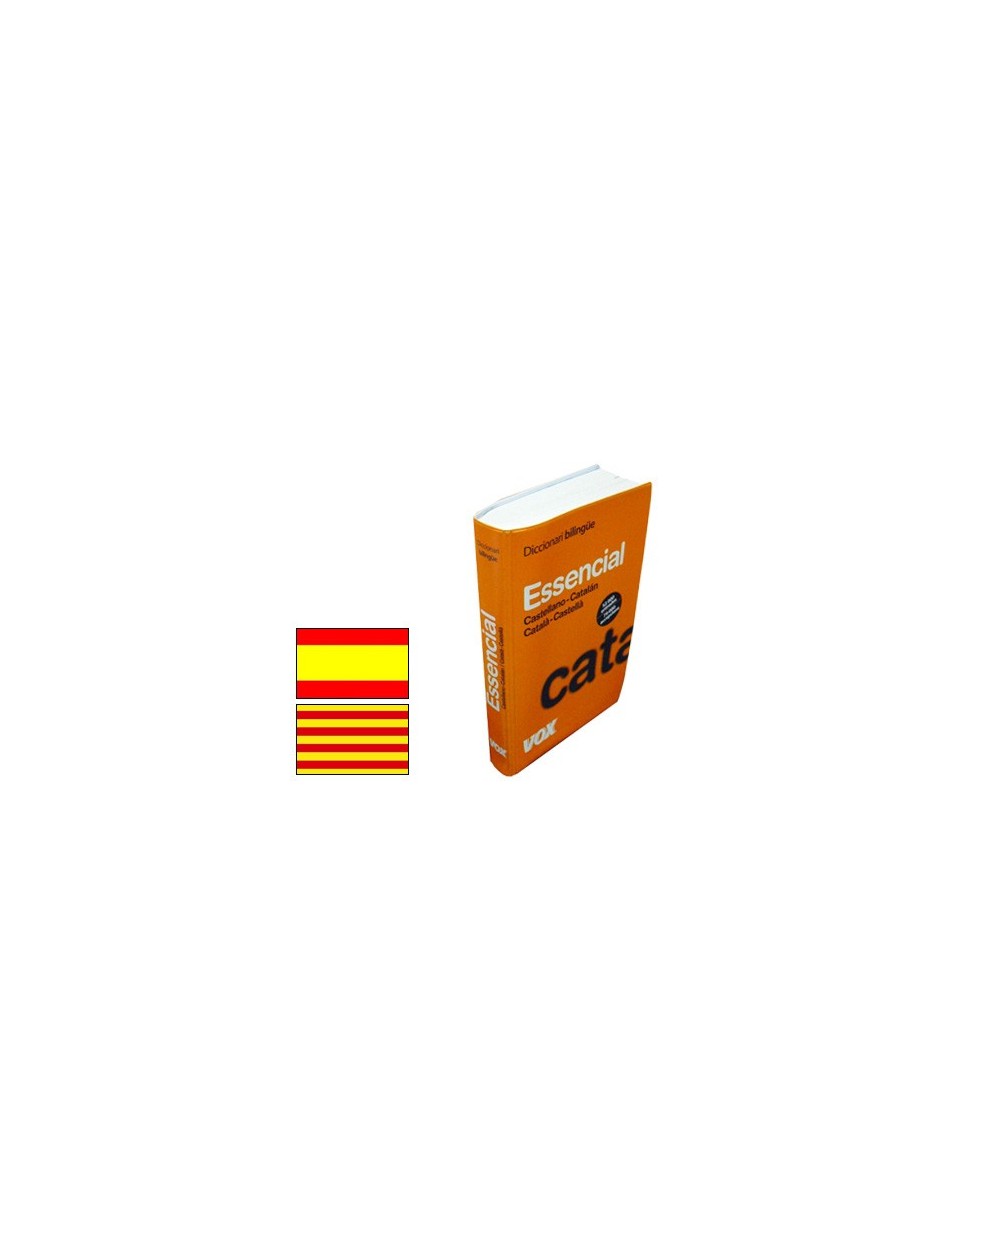 Diccionario vox esencial catalan castellano